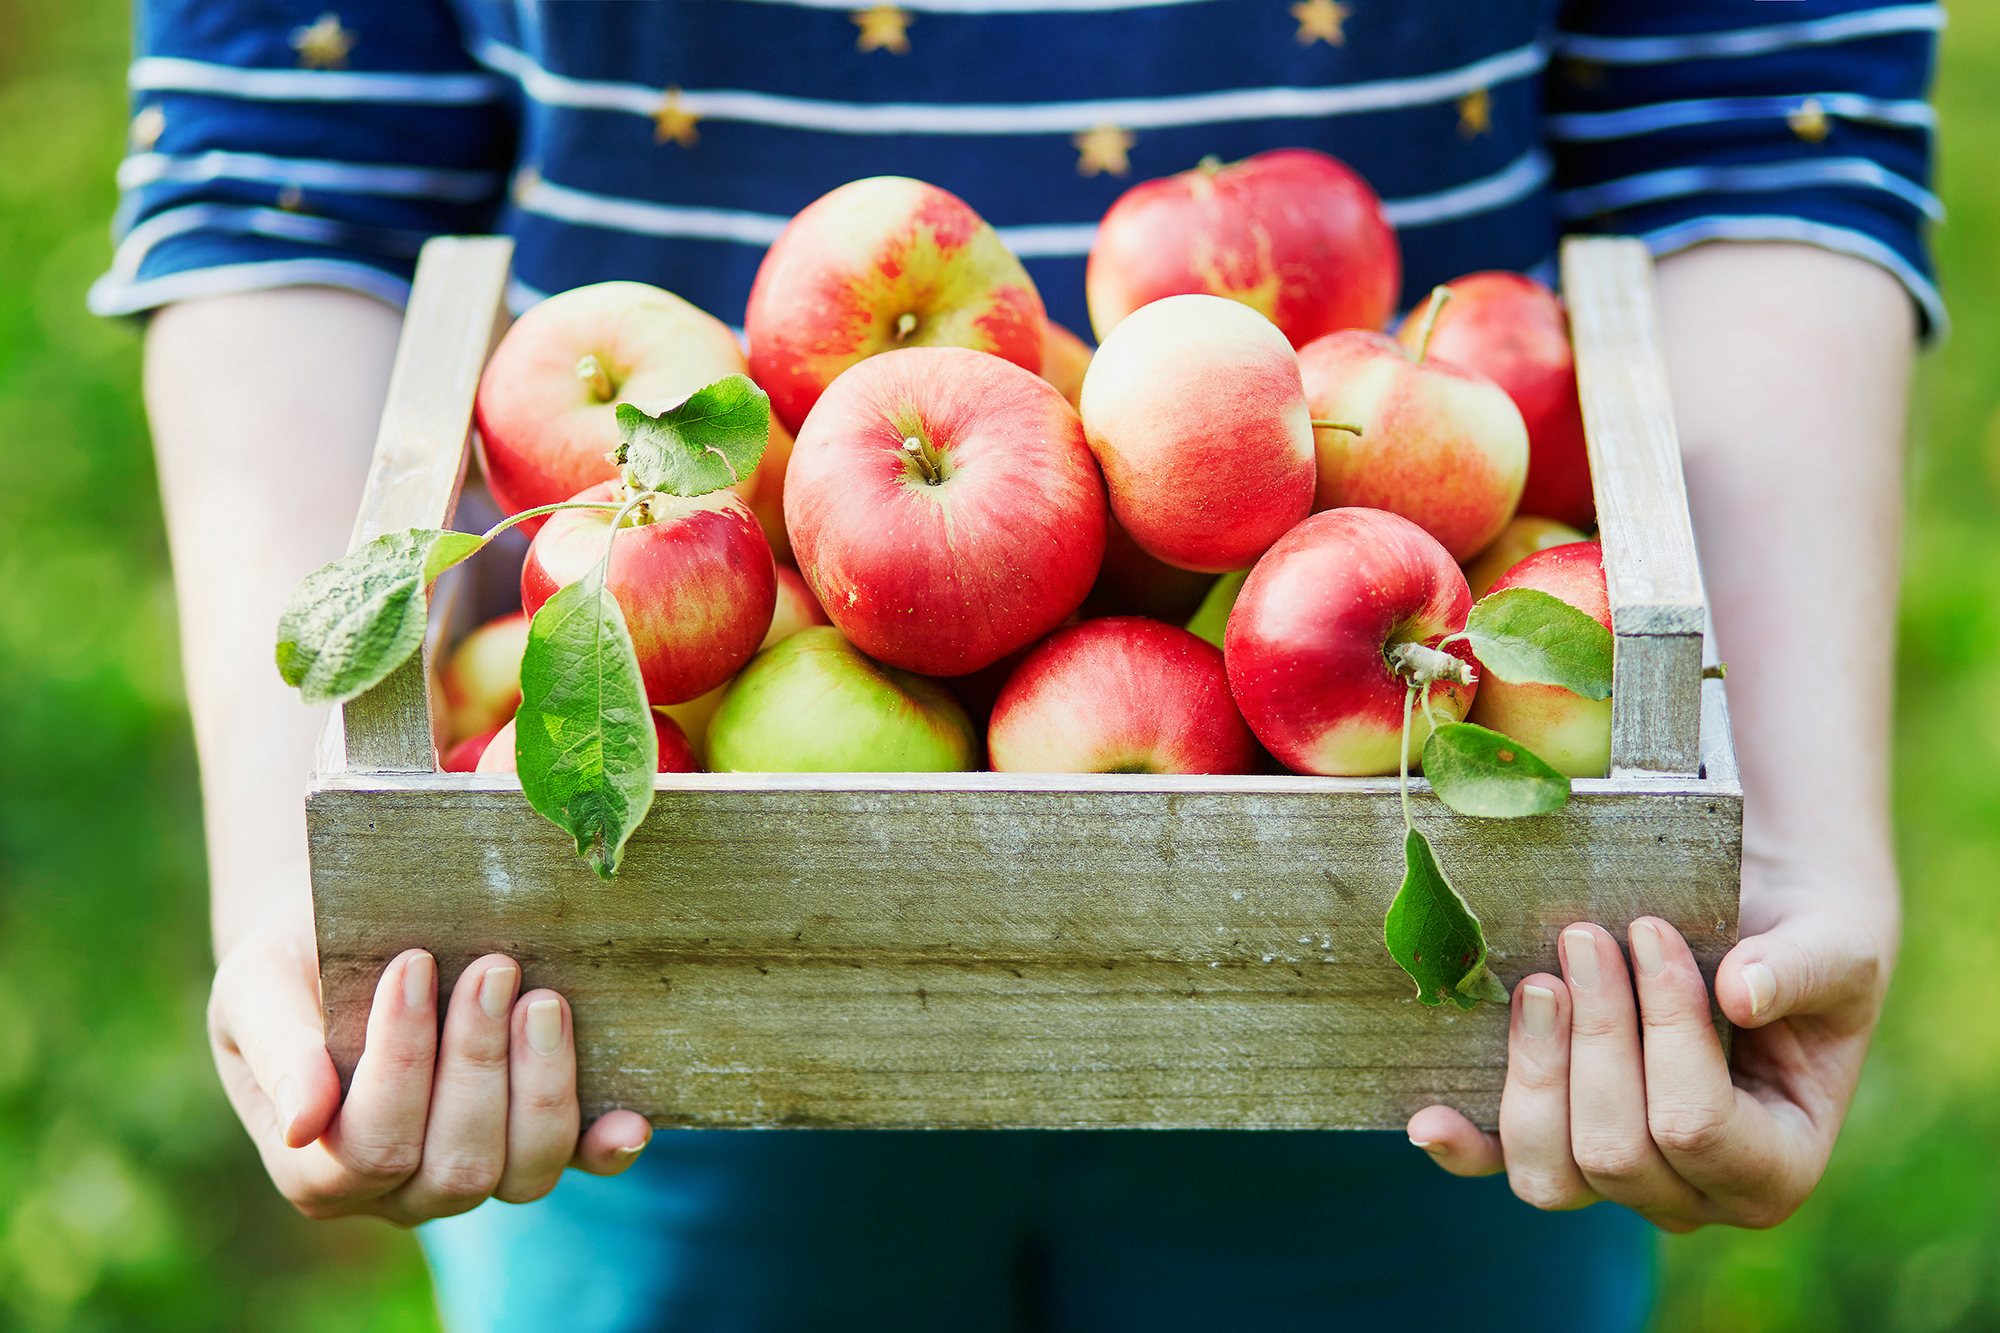 Punaisia omenoita puisessa korissa. Koria pitelee siniraidalliseen paitaan pukeutuneet kädet.